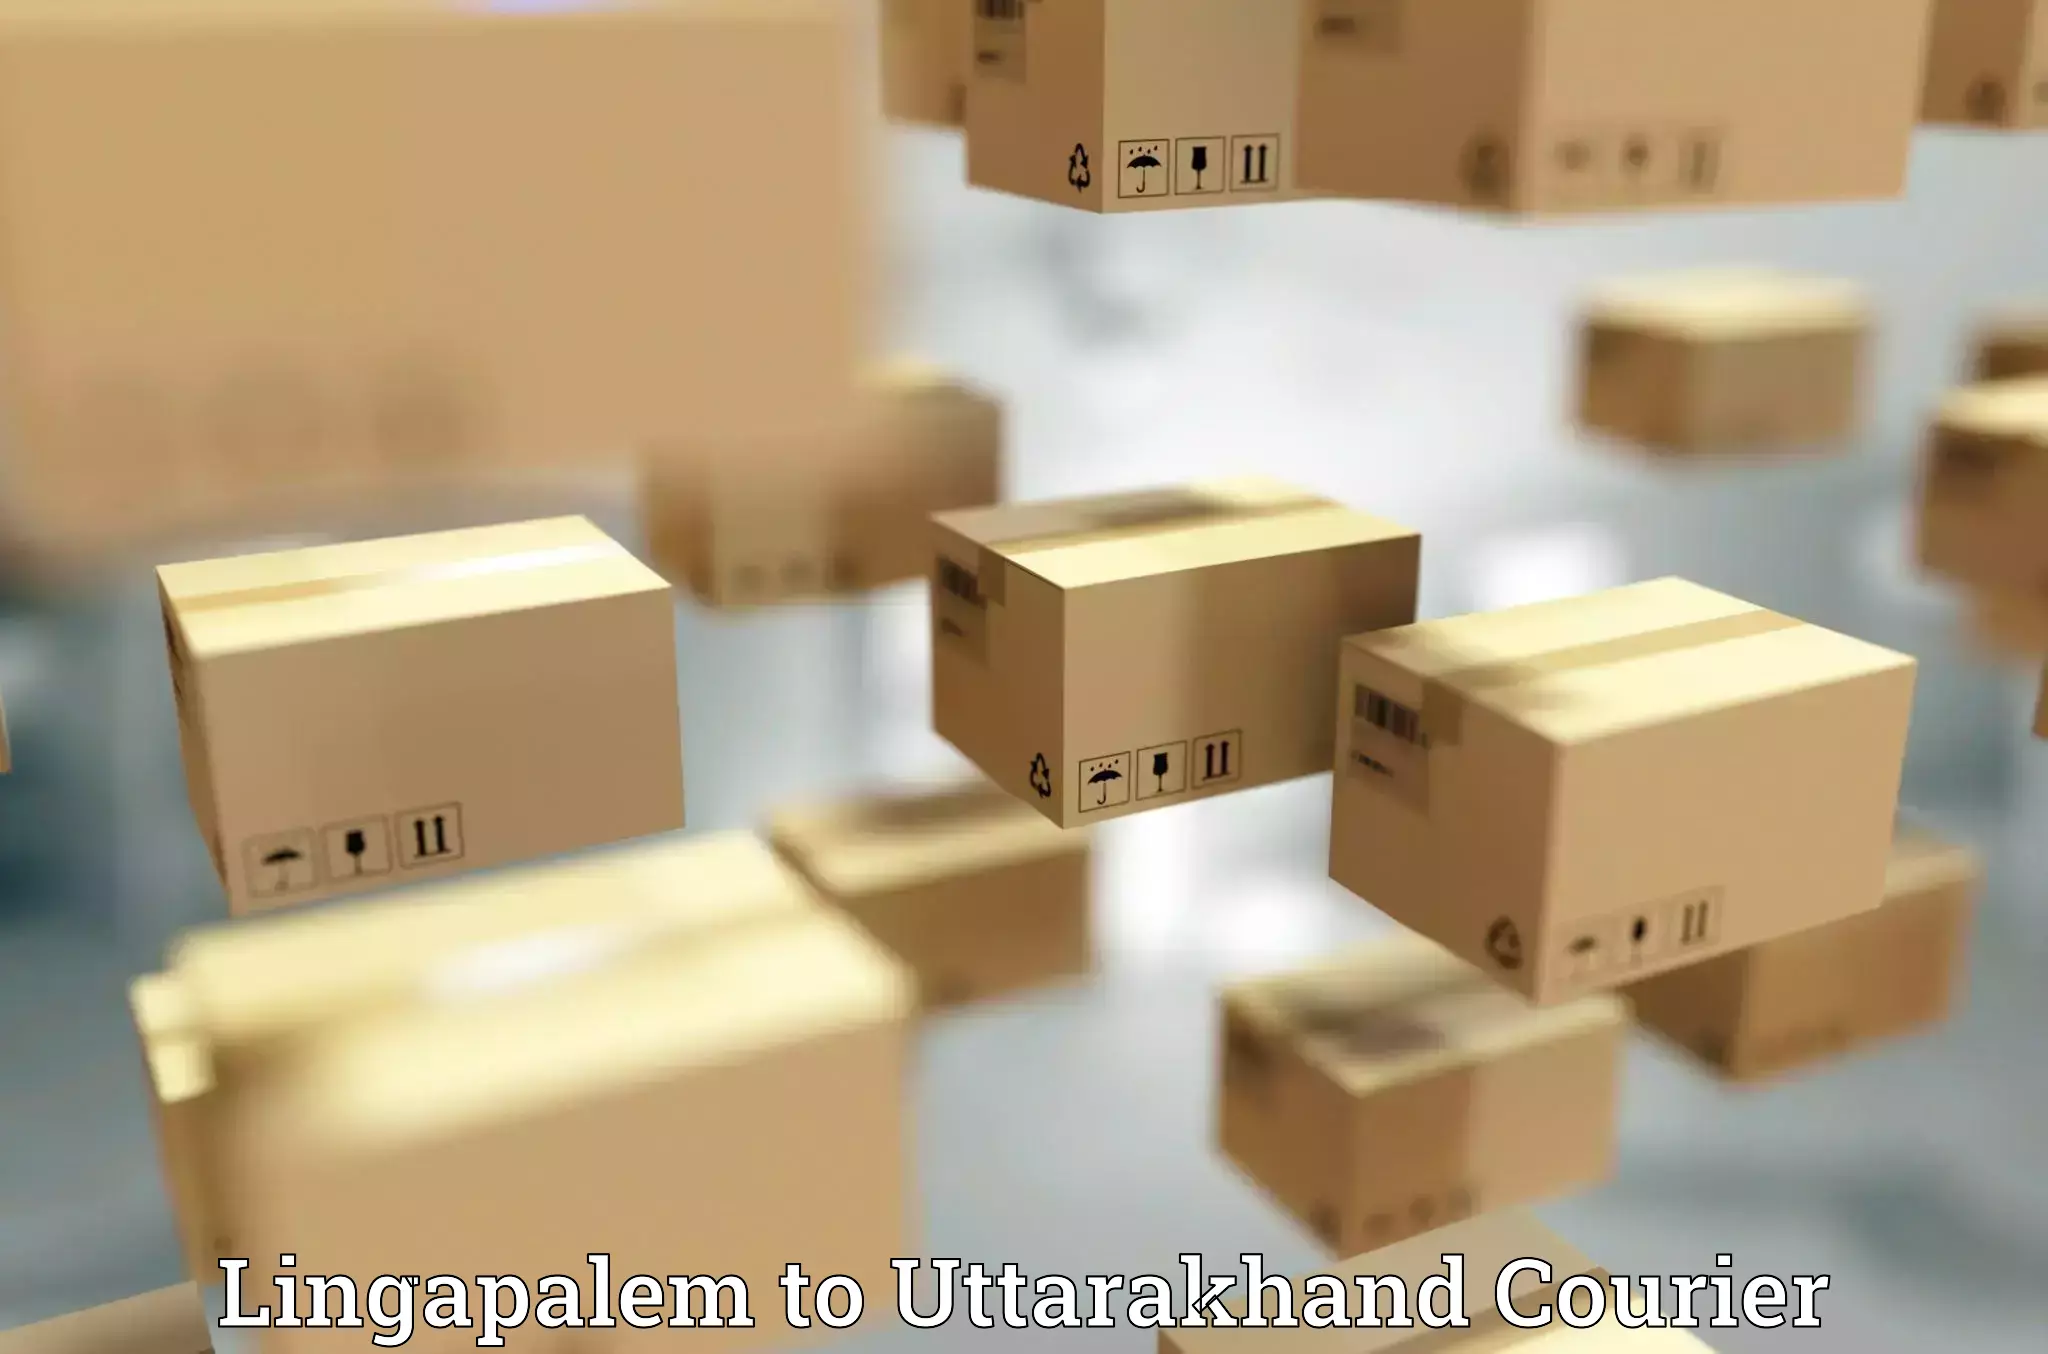 Urban courier service Lingapalem to Uttarakhand